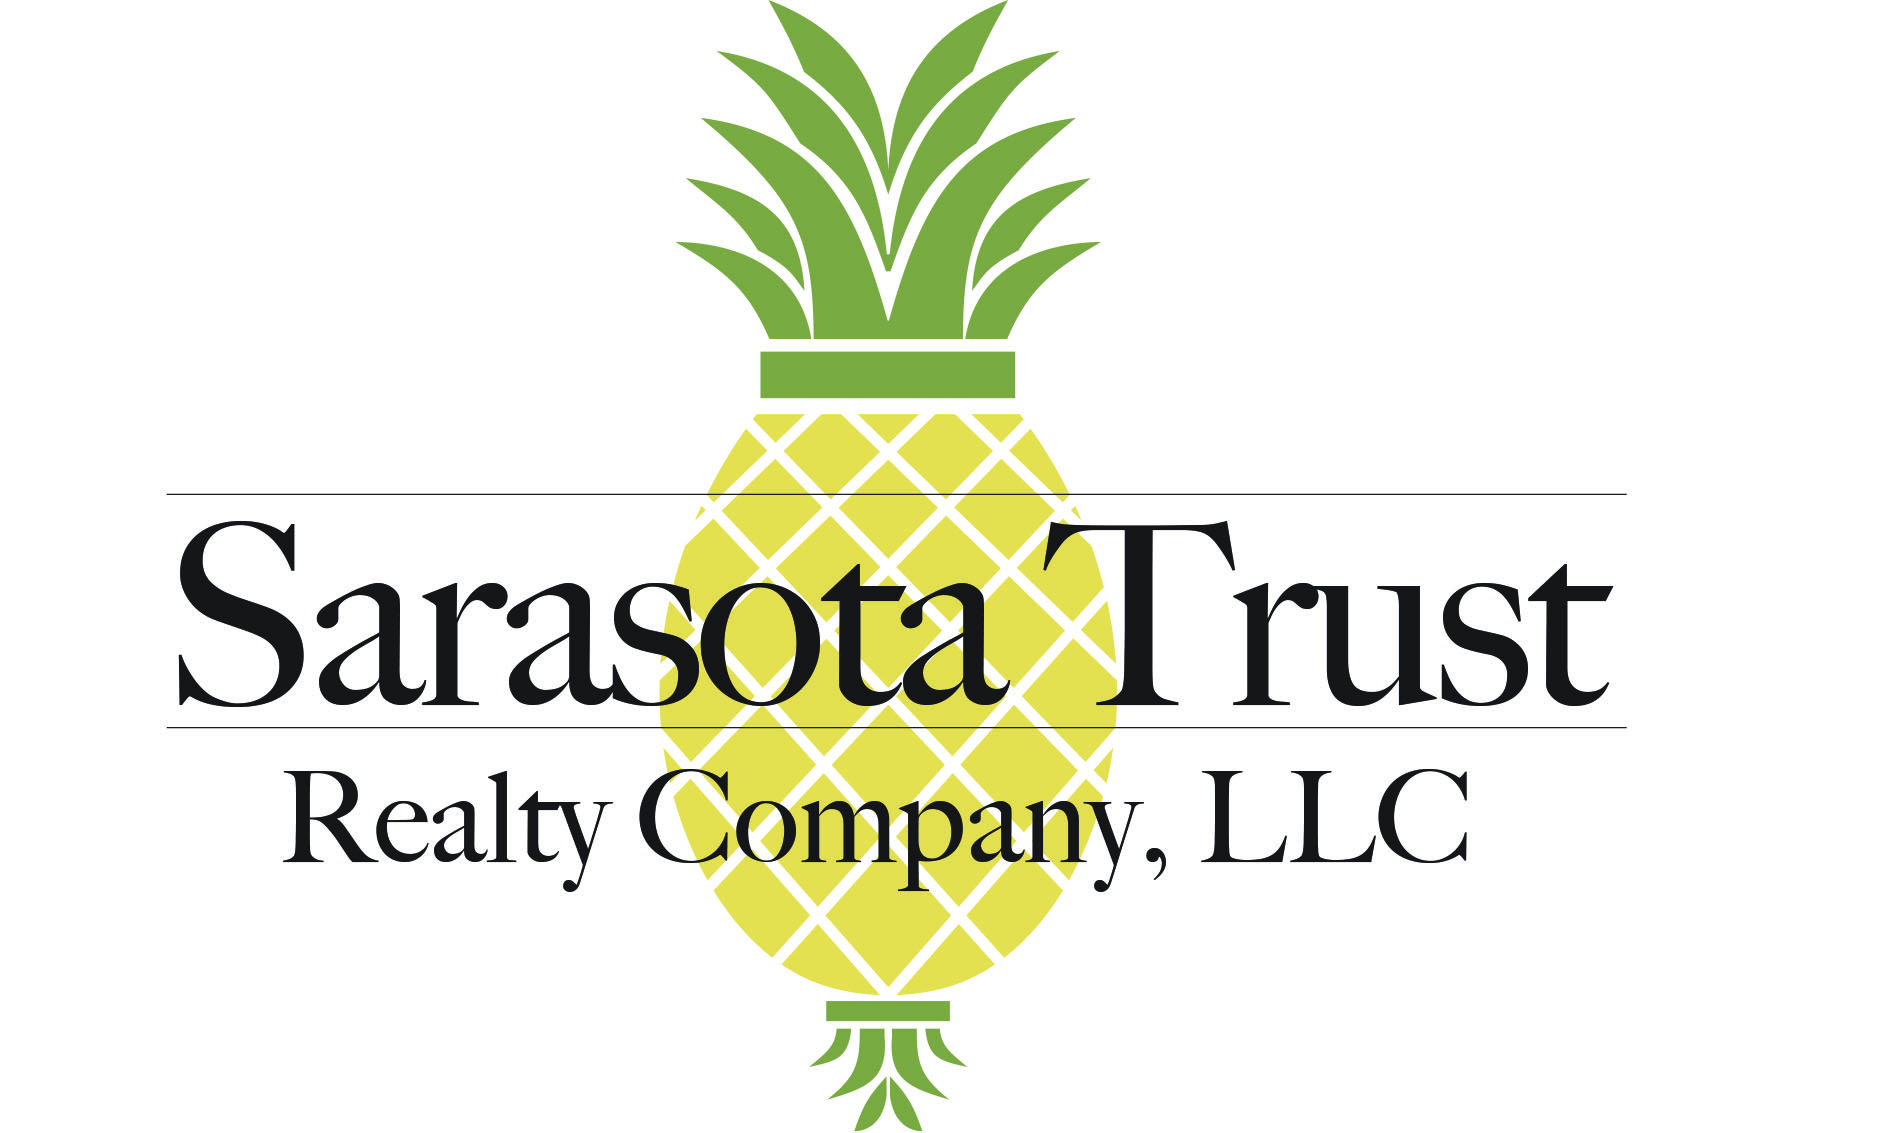 Sarasota Trust Realty Company